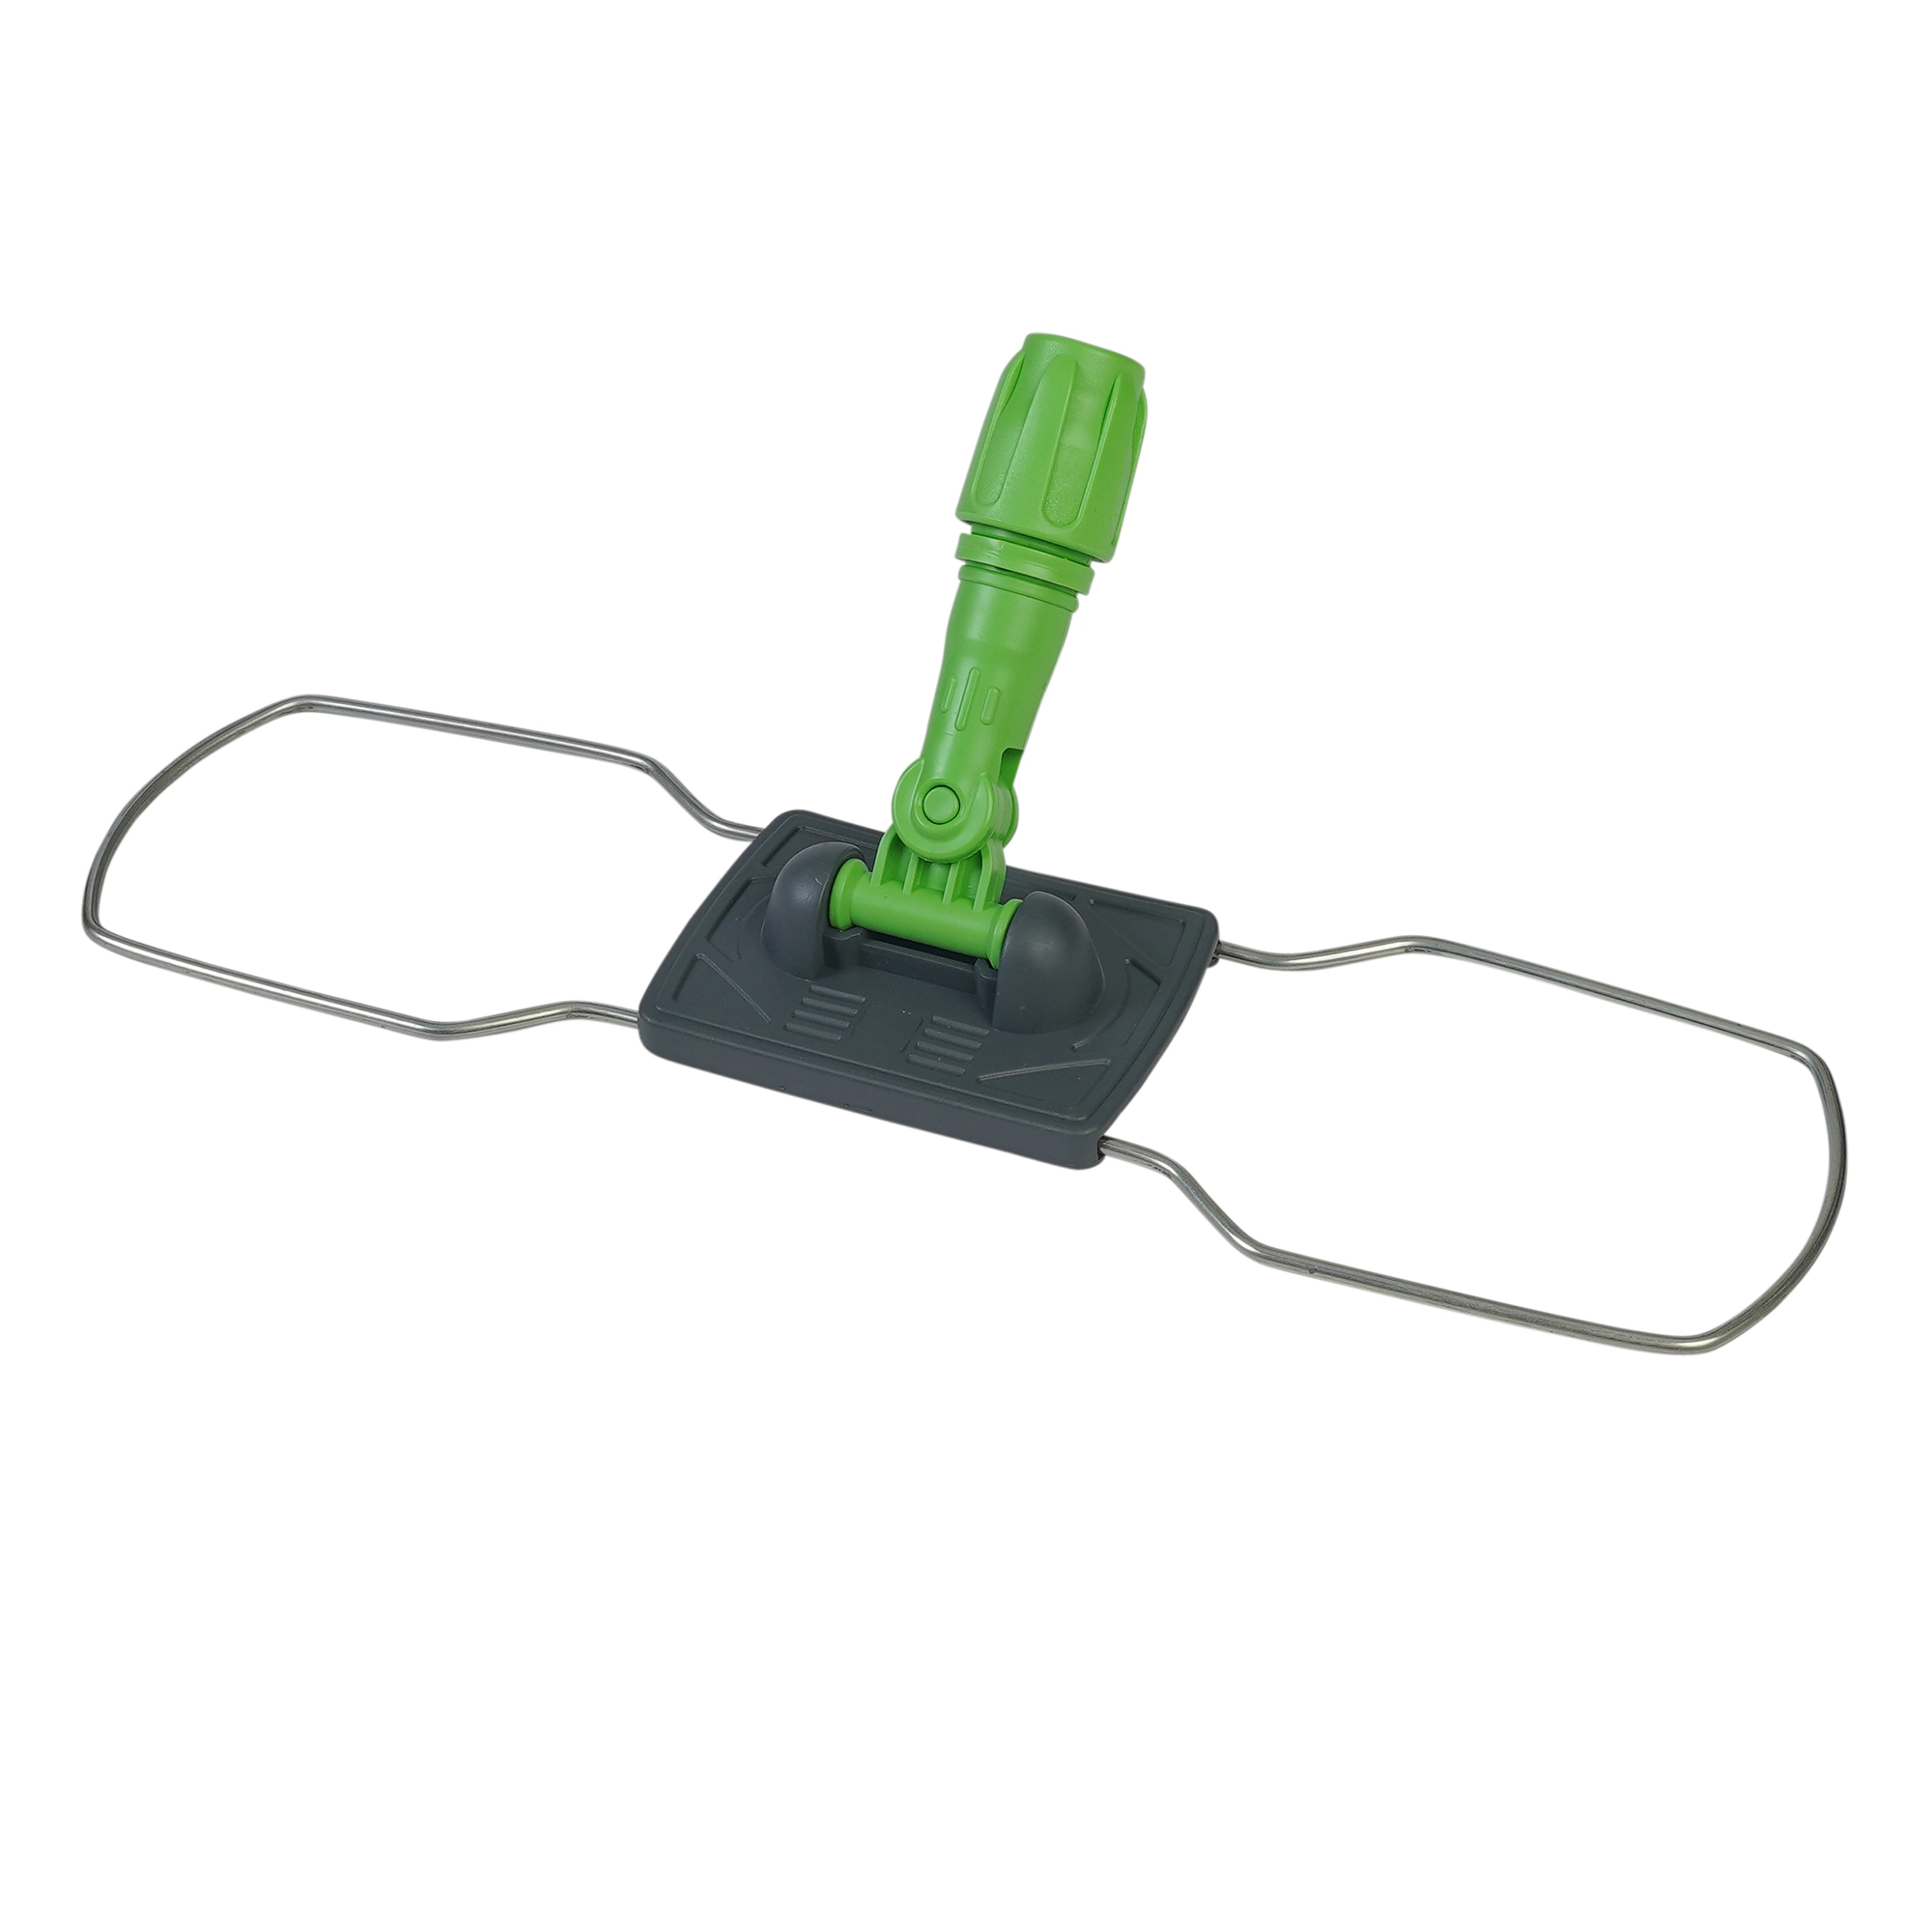 Держатель мопов складной рамочный, металл, крепление карман, без педалей, 50х14 см, цвет зеленый - NT181-G